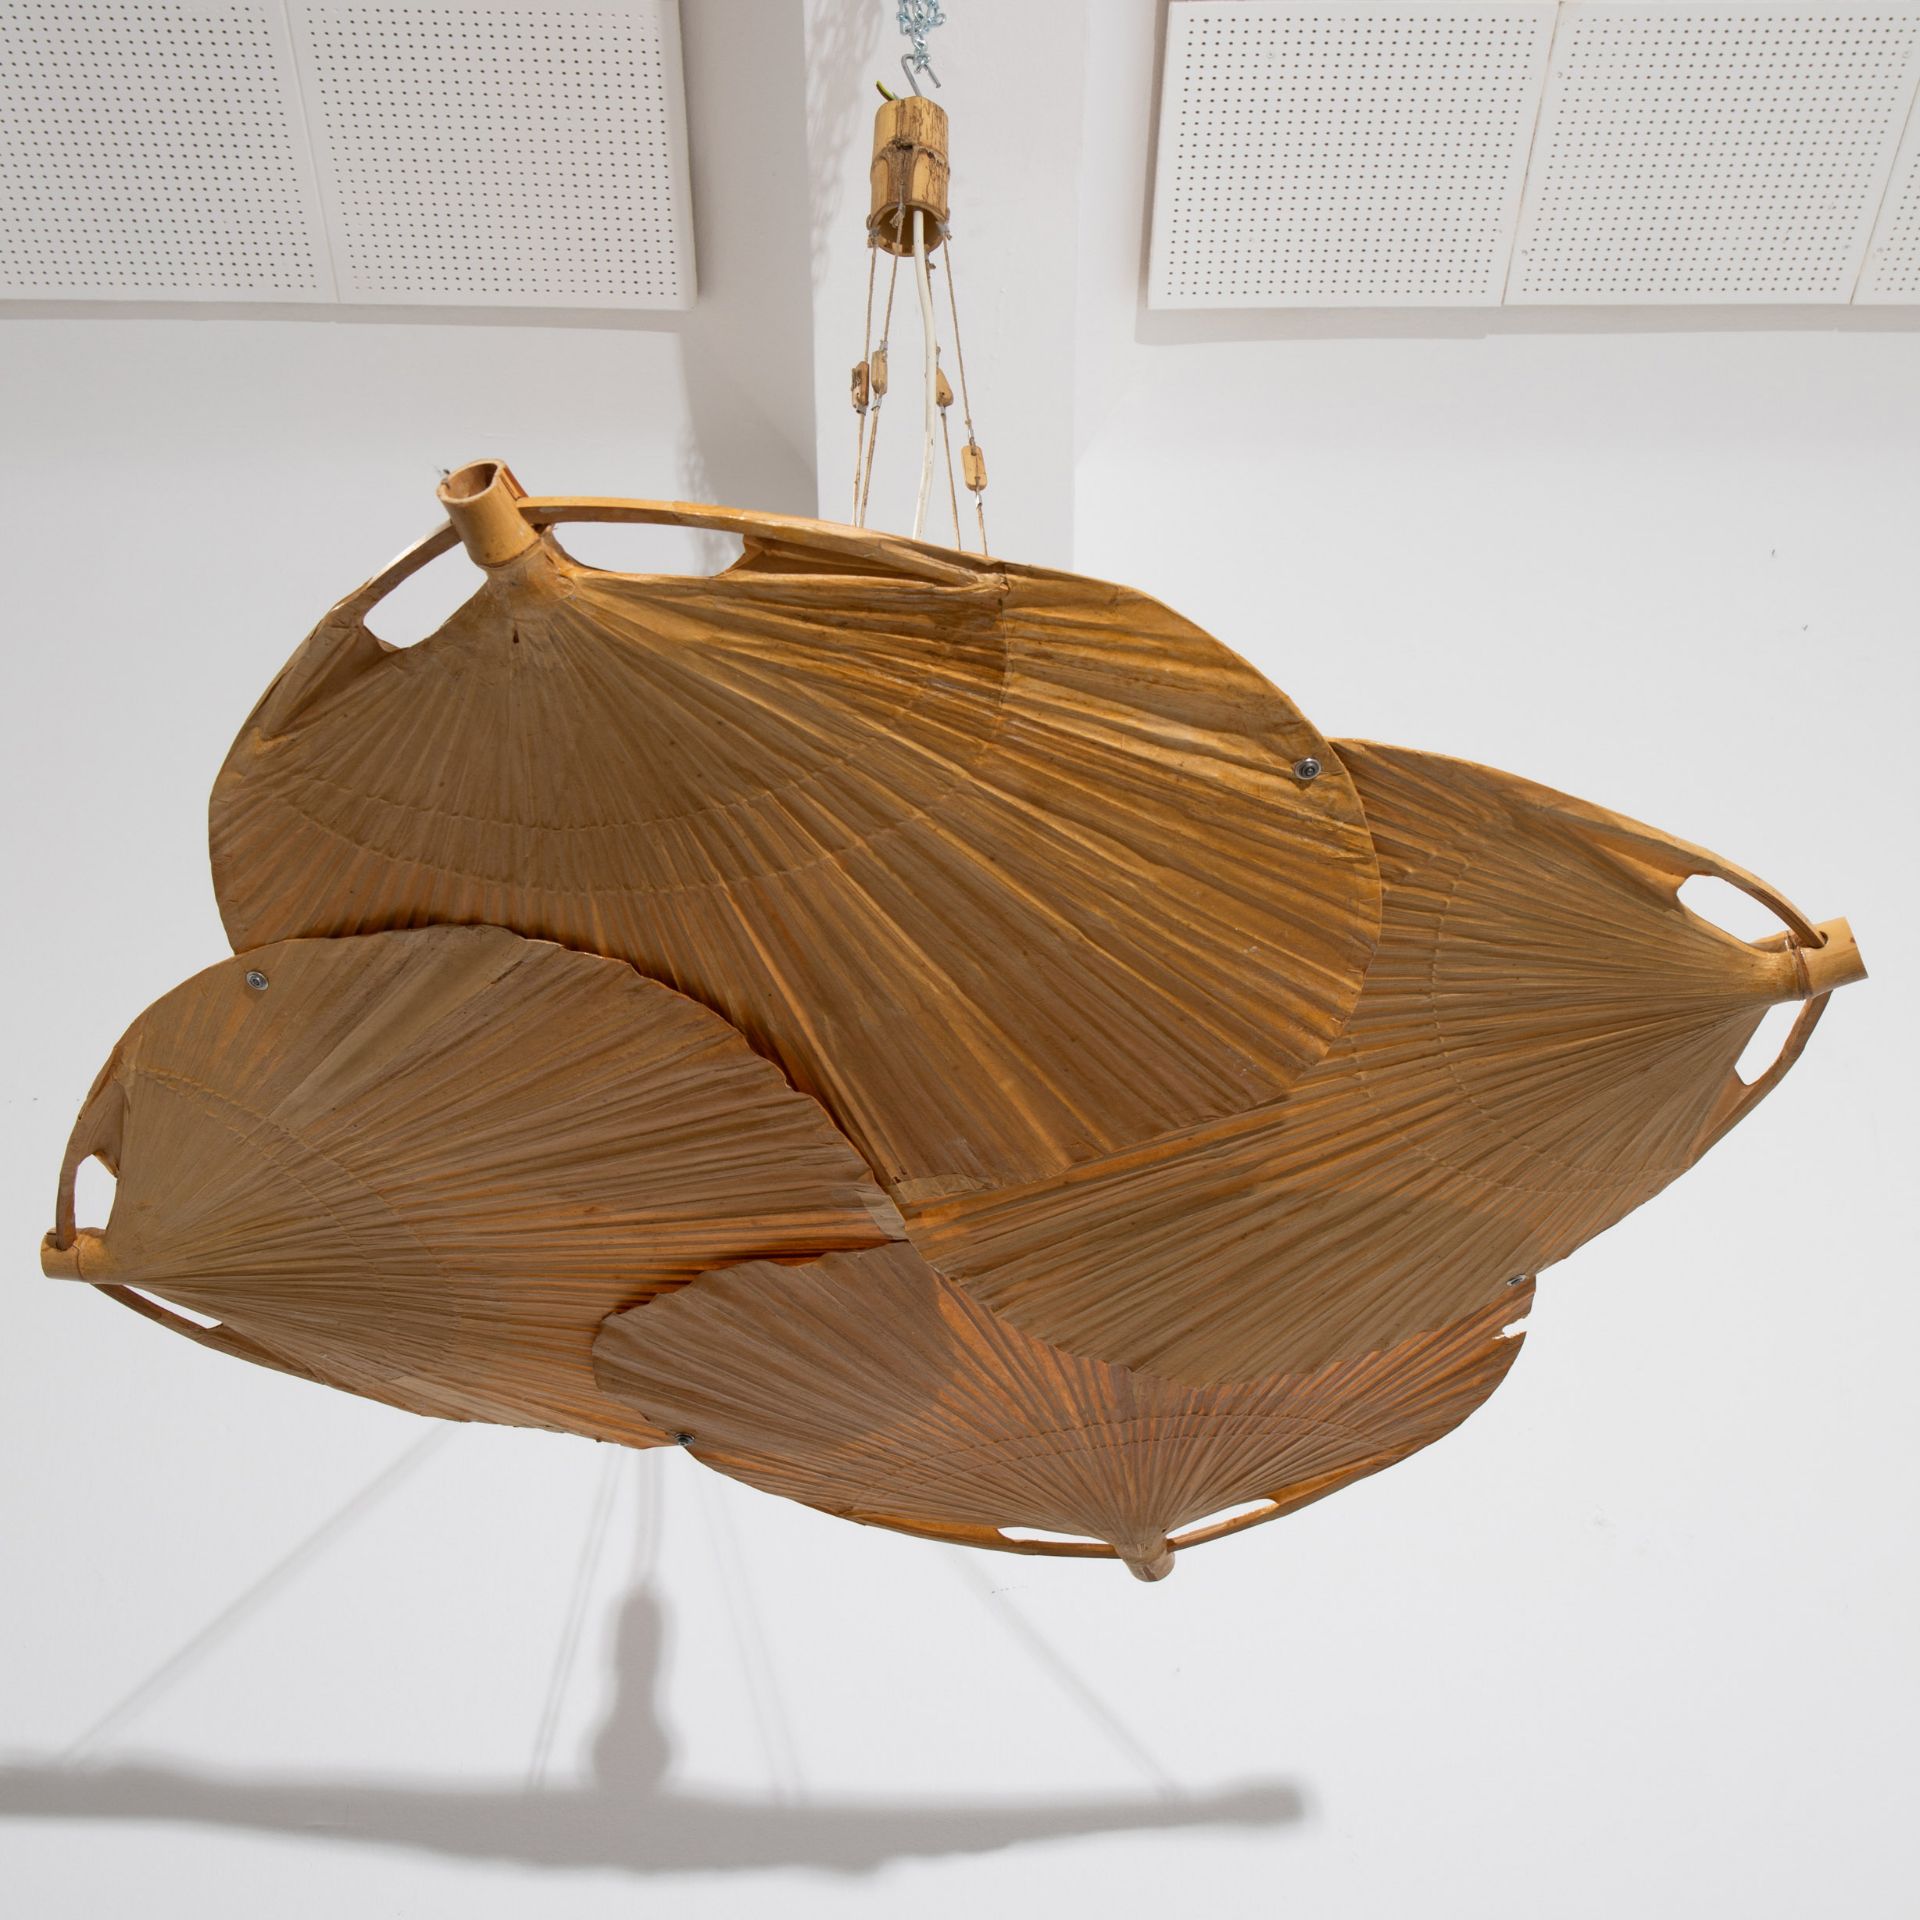 Ingo Maurer, Design M, Pendant lamp model Uchiwa / Yotsuba - Image 2 of 6